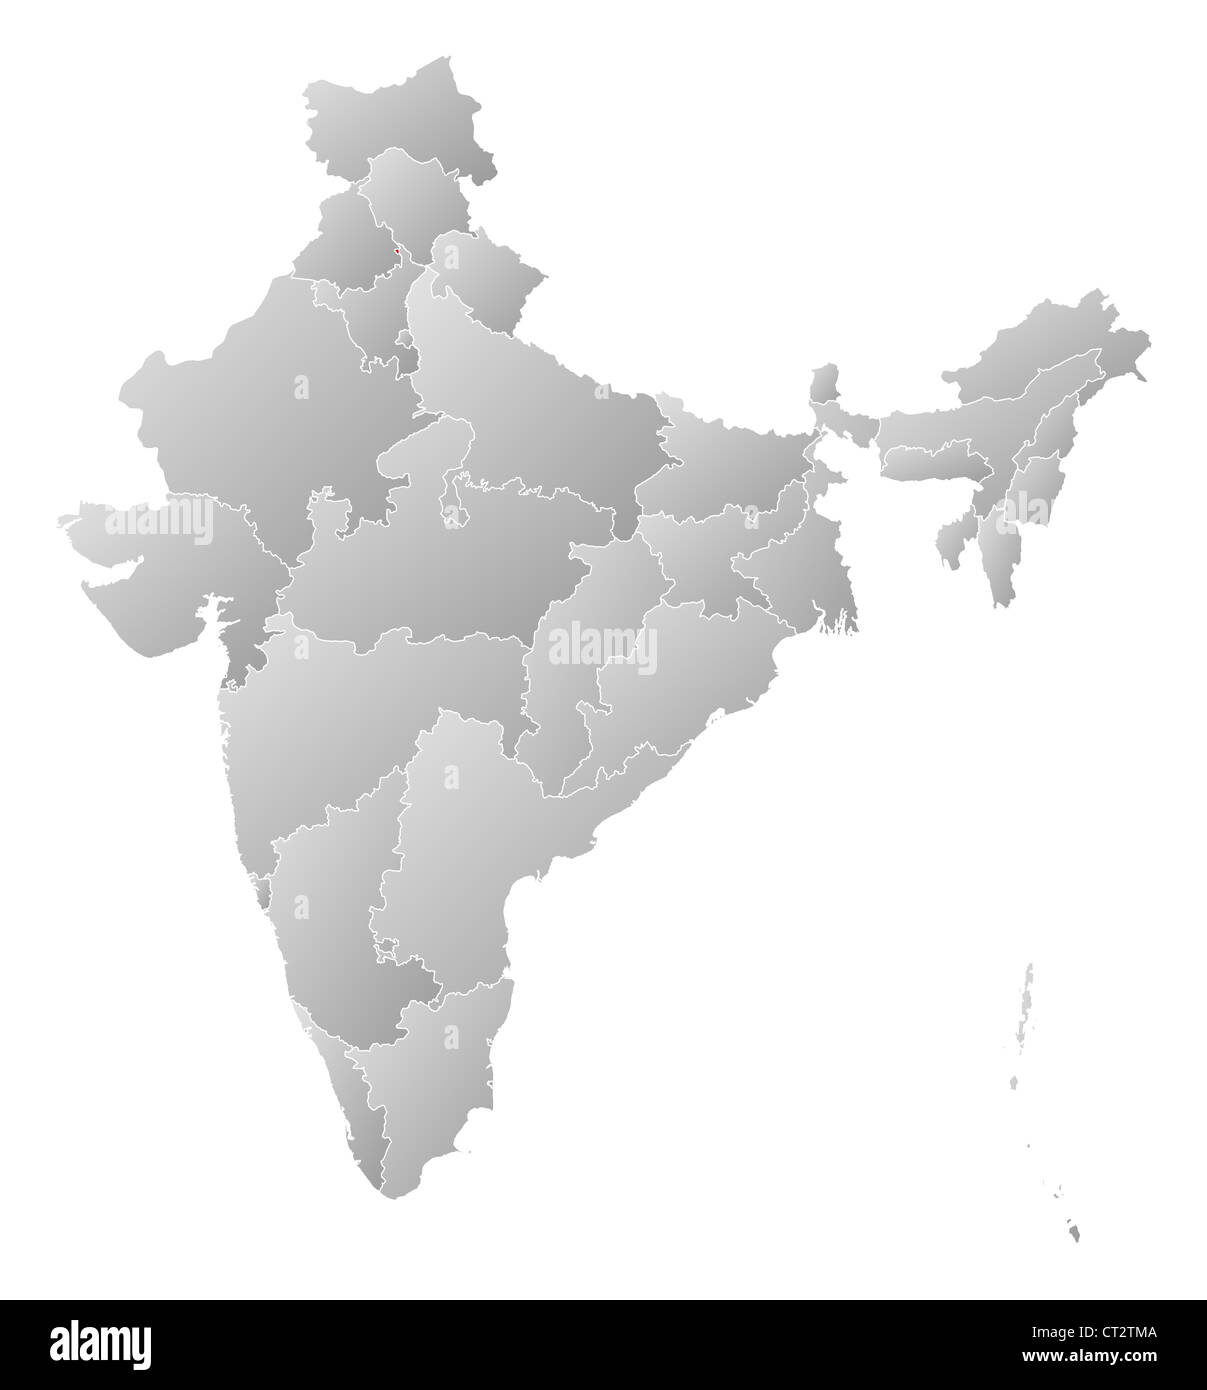 Mappa politico dell'India con i vari Stati in cui Chandigarh è evidenziata. Foto Stock